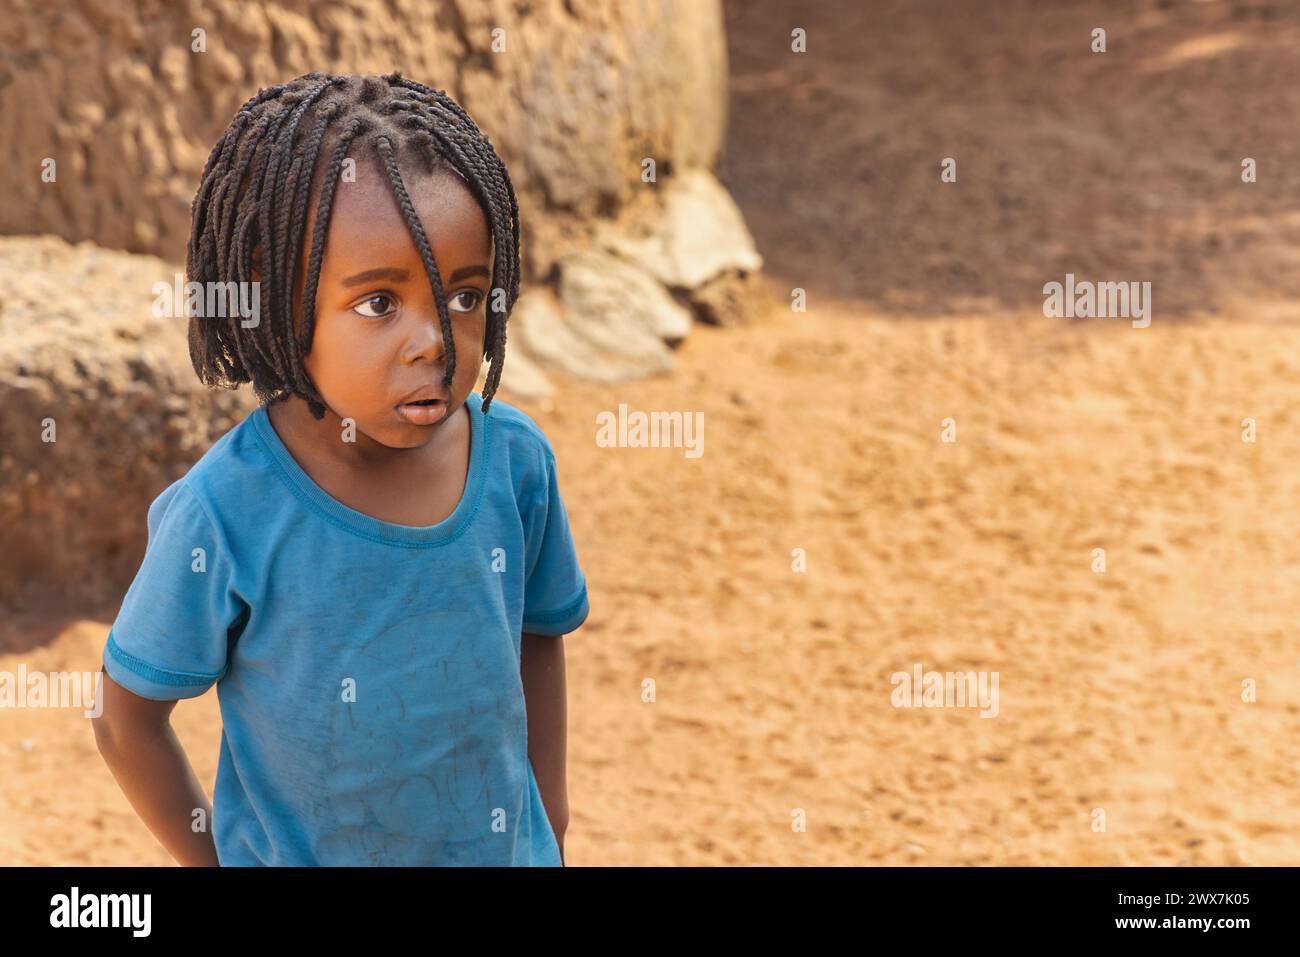 portrait d'une fille africaine avec des tresses jouant dans la cour, vie de village africain Banque D'Images